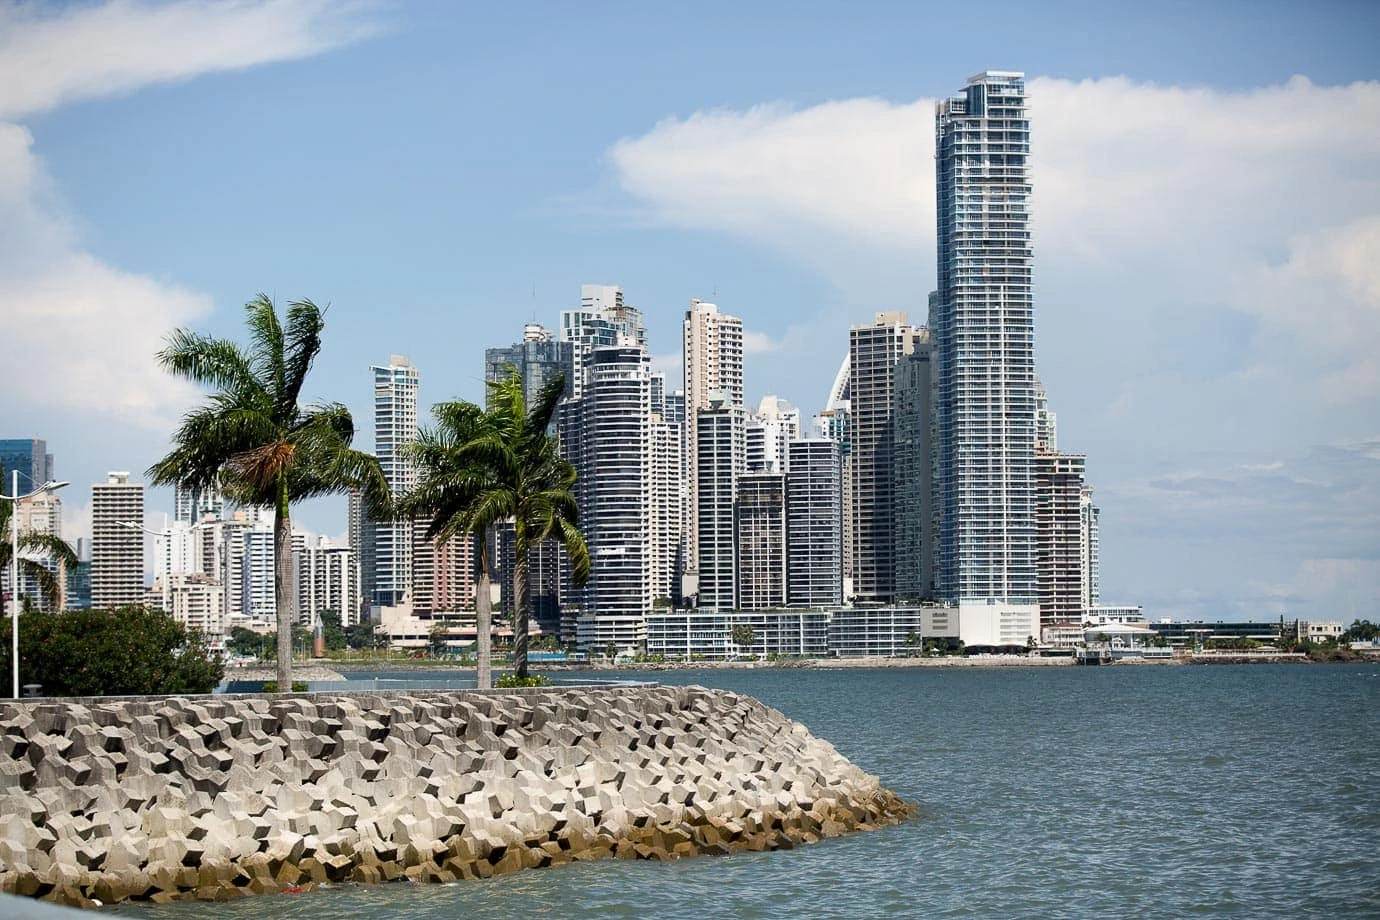 Panama City; the Miami of Central America